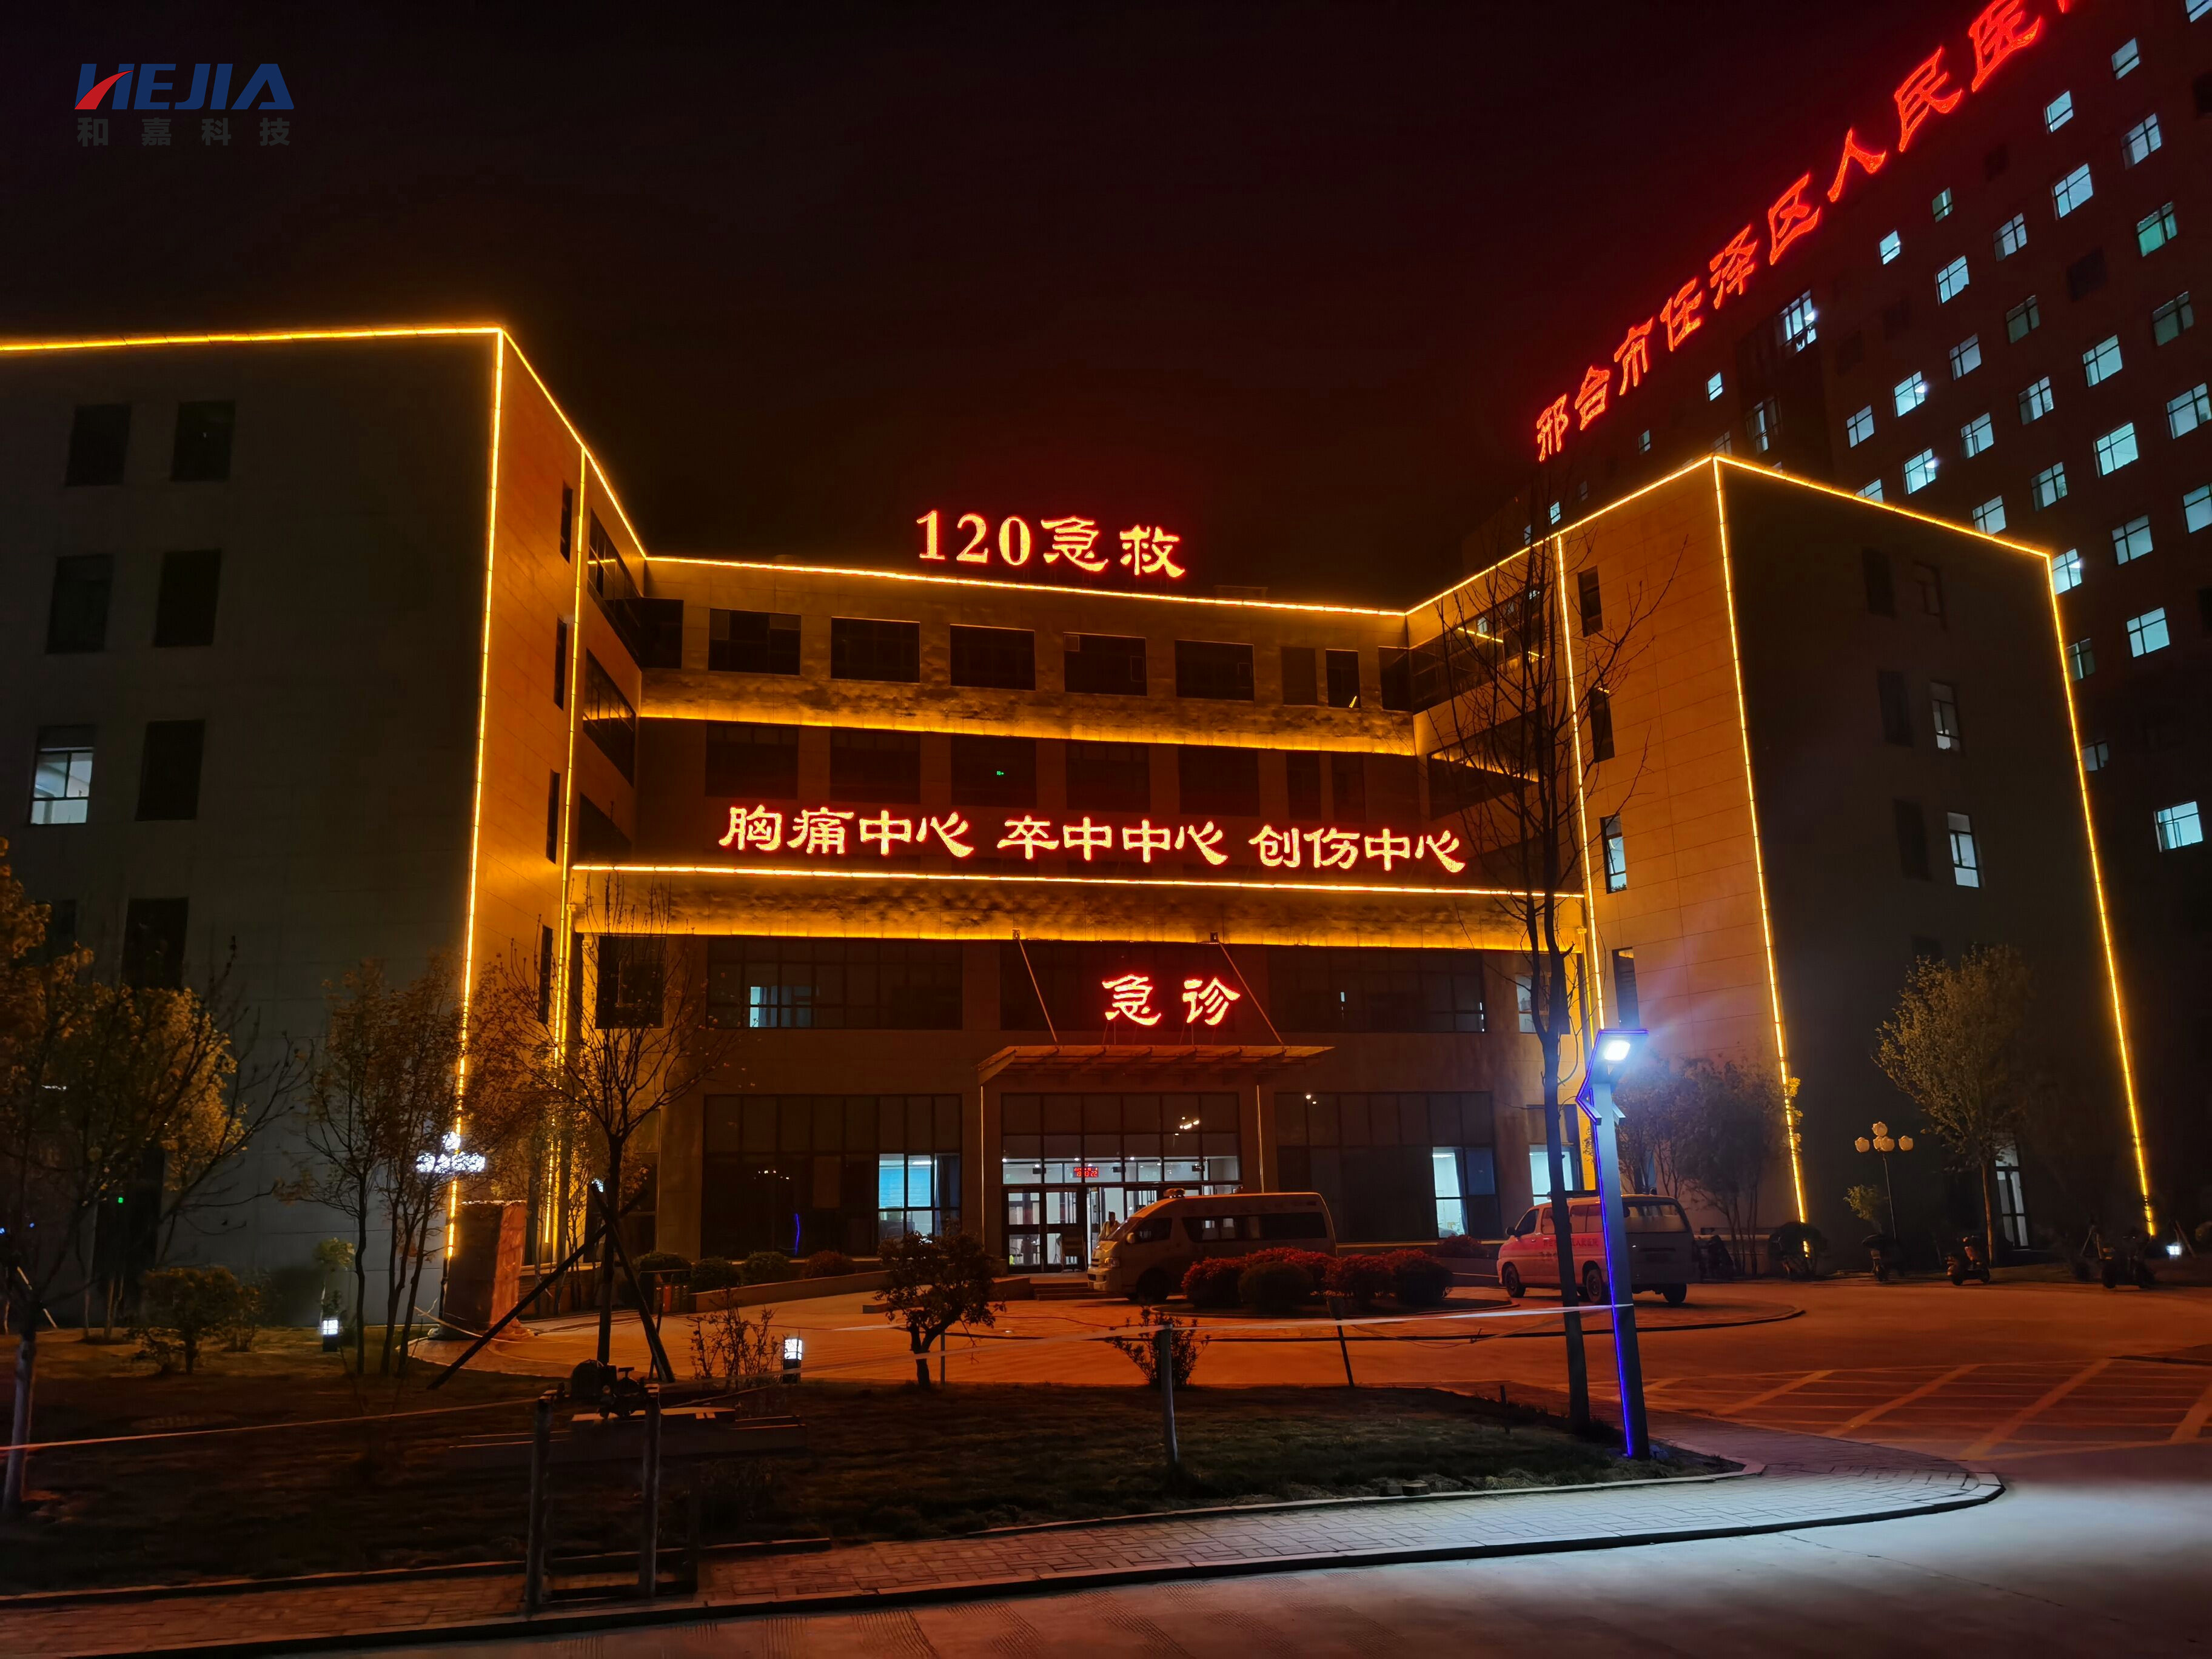 和嘉丨河北省任县医院动环监控系统项目在建 